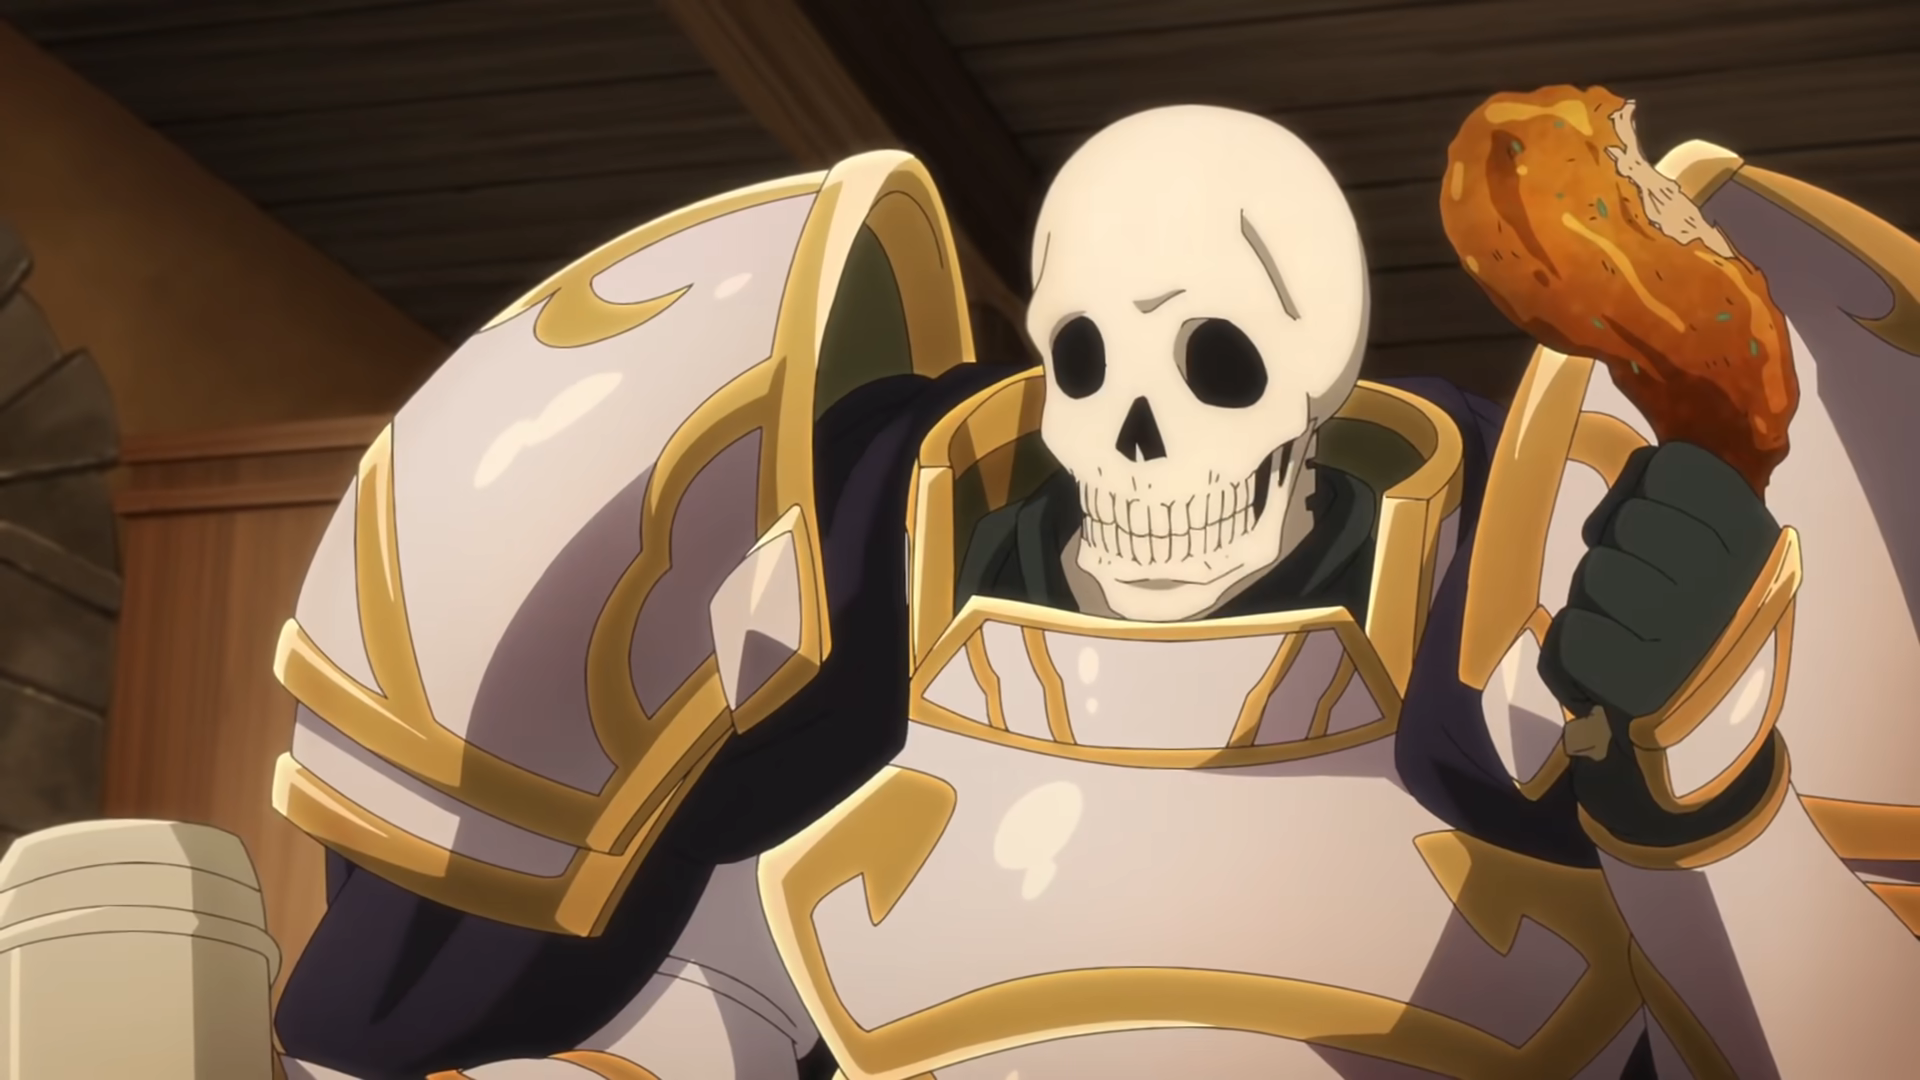 HOT P] Áo Thun Anime Beserk Skull Knight Áo Thun Đồ Họa Cho Nam Nữ Áo Thun Skull  Knight Áo Thun Anime Manga Beserk | Lazada.vn